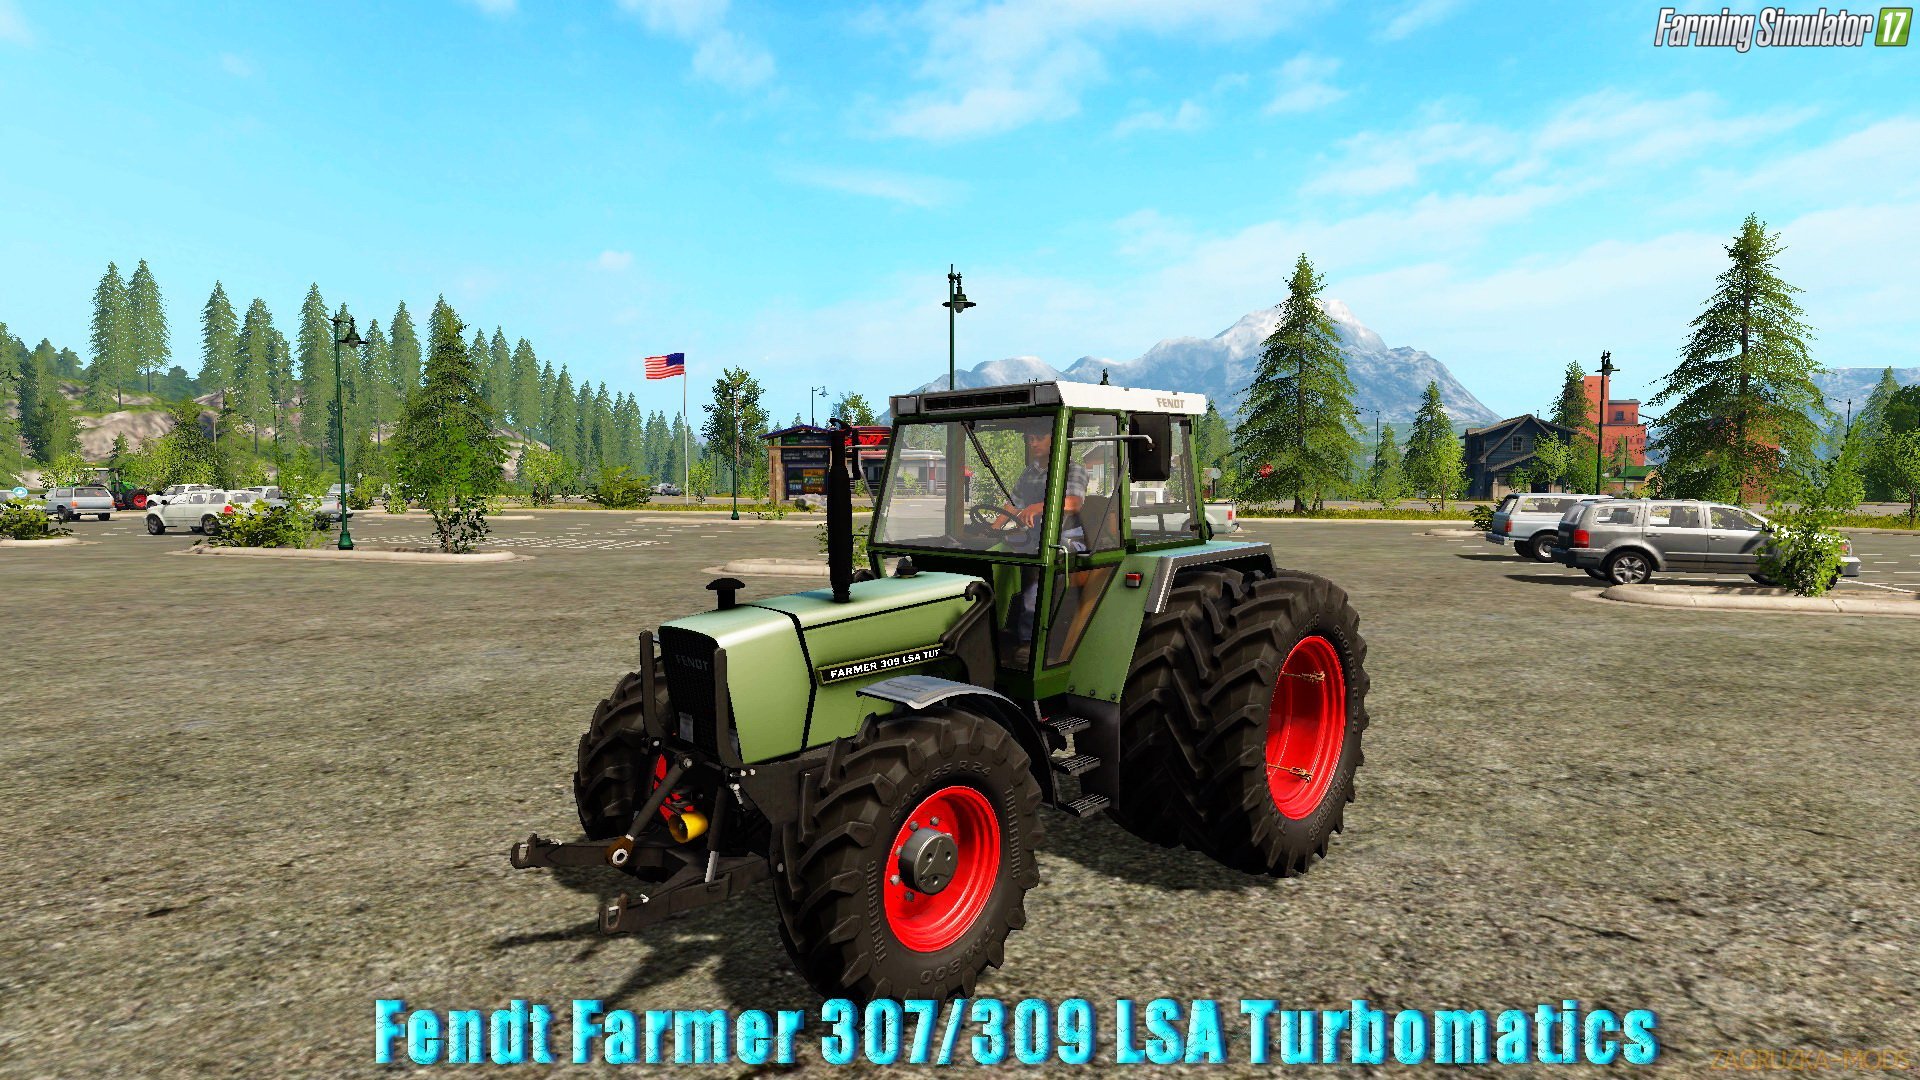 Tractor Fendt Farmer 307/309 LSA Turbomatics v1.0 for FS 17